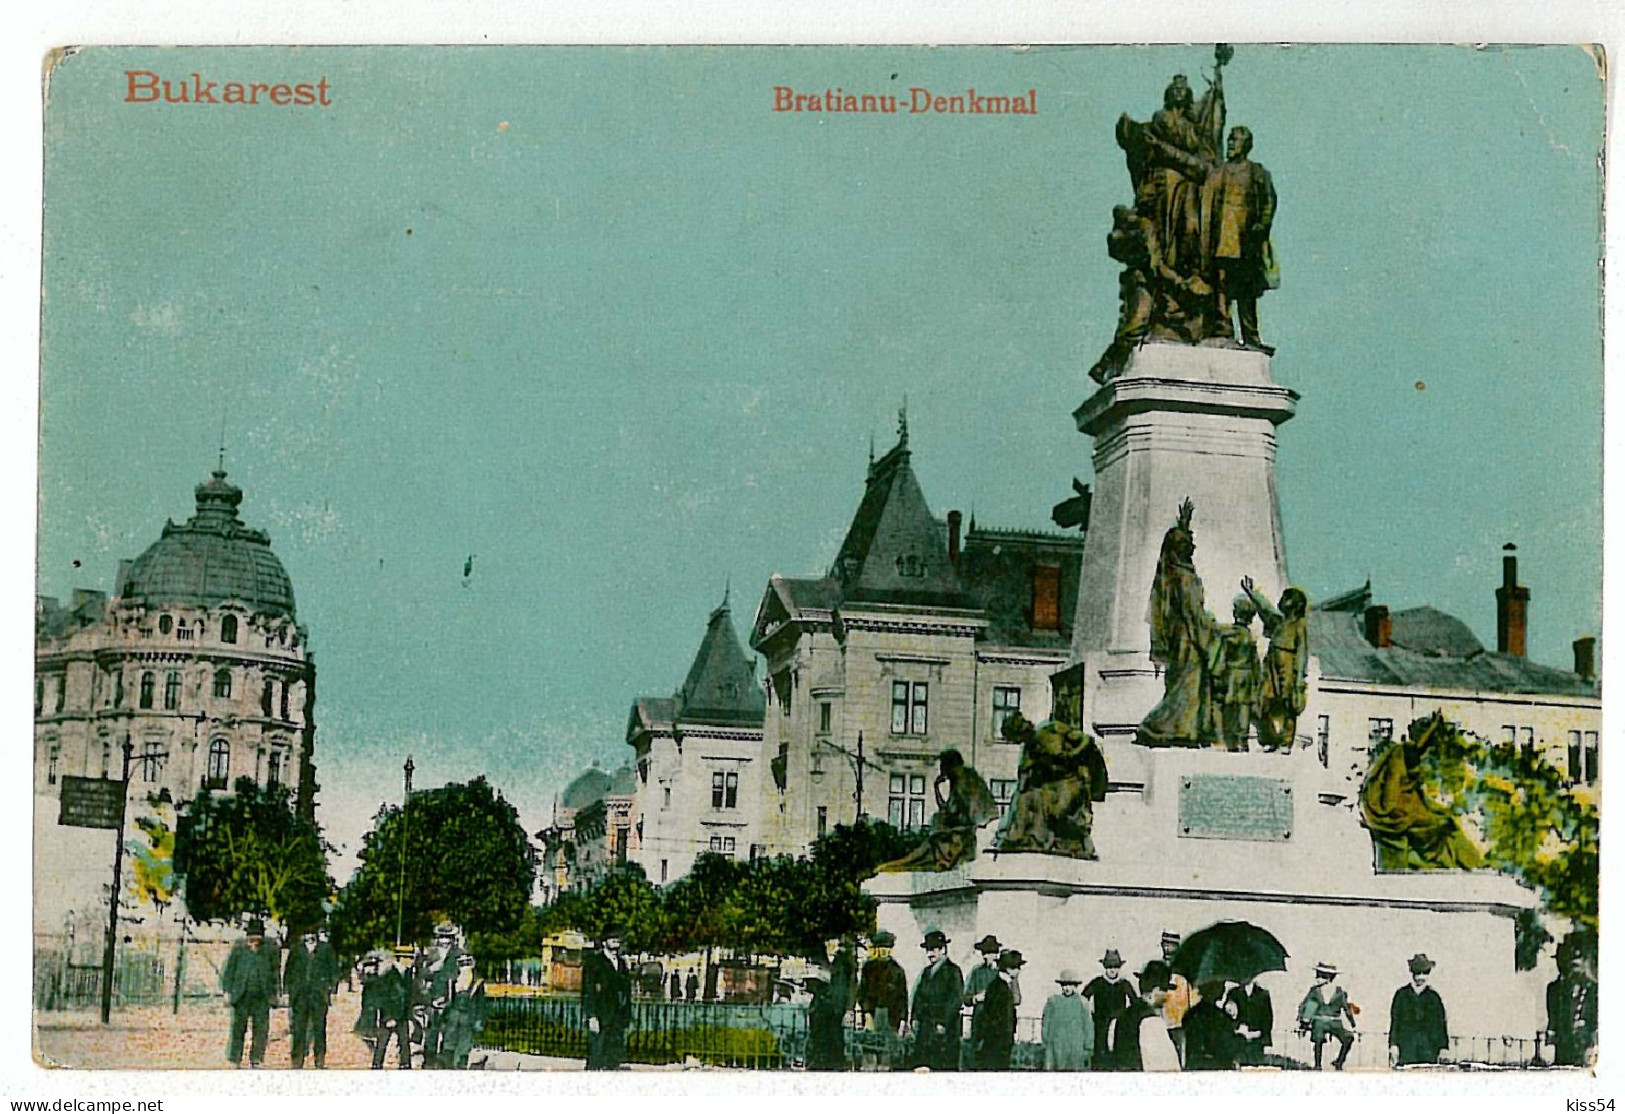 RO 40 - 1375 BUCURESTI, Bratianu Statue, Romania - Old Postcard - Used - 1917 - Roemenië